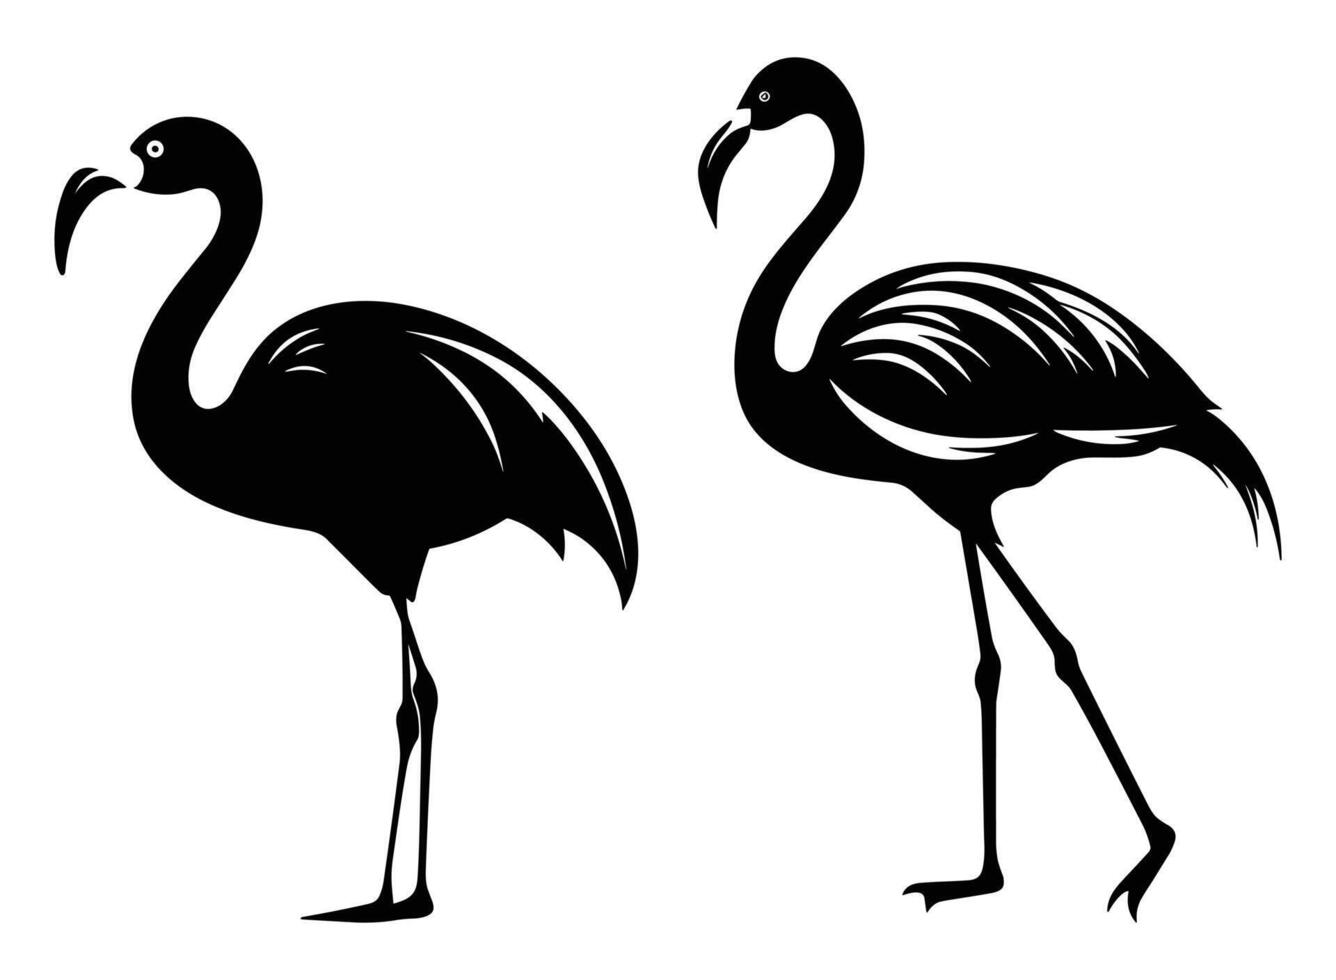 flamingo zwart silhouet vector, wit achtergrond. vector